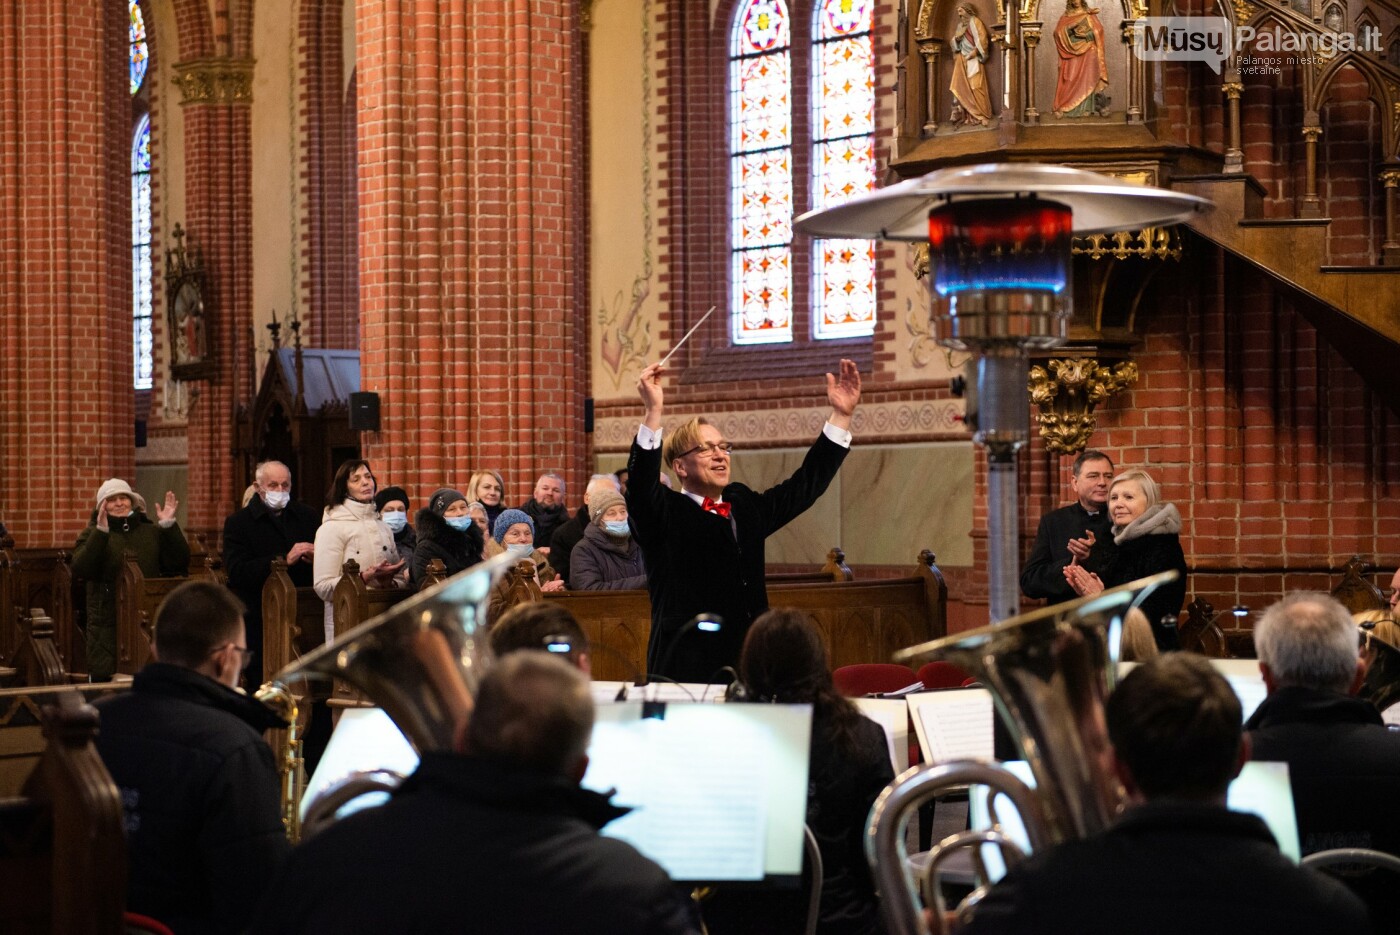 Nuotraukose - akimirkos iš „Kalėdinės muzikos valandos“ koncerto Švėkšnos Šv. Apaštalo Jokūbo bažnyčioje., Autorius - Marius Lukošius.